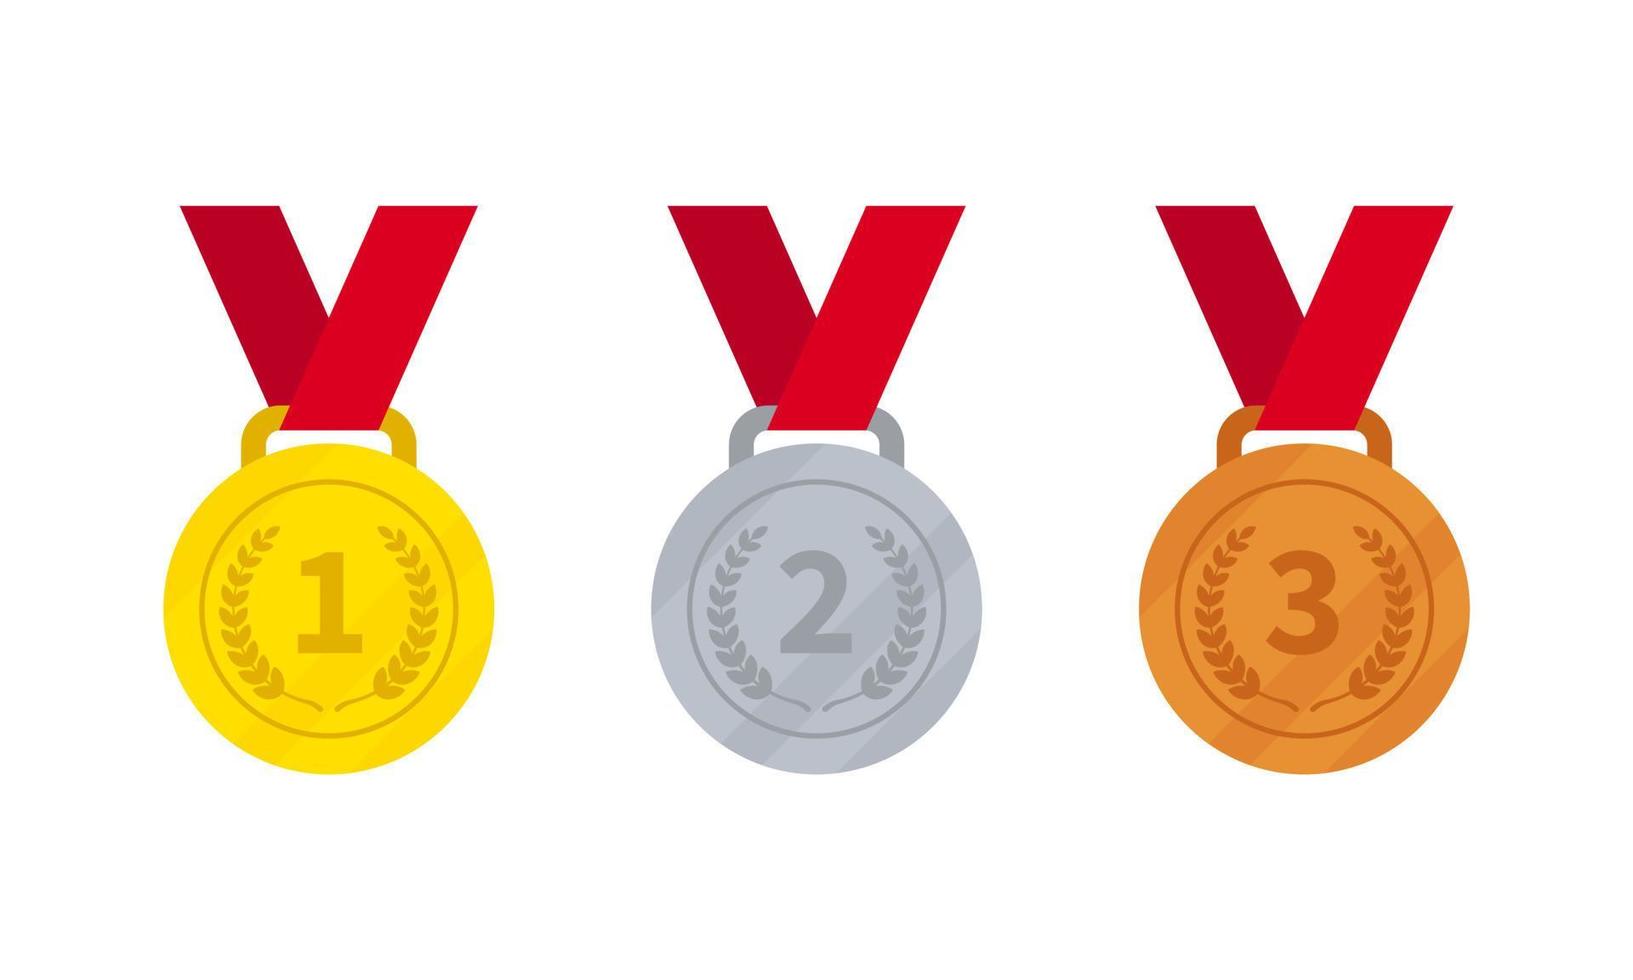 vetor plano de medalhas de ouro, prata e bronze isolado no fundo branco.